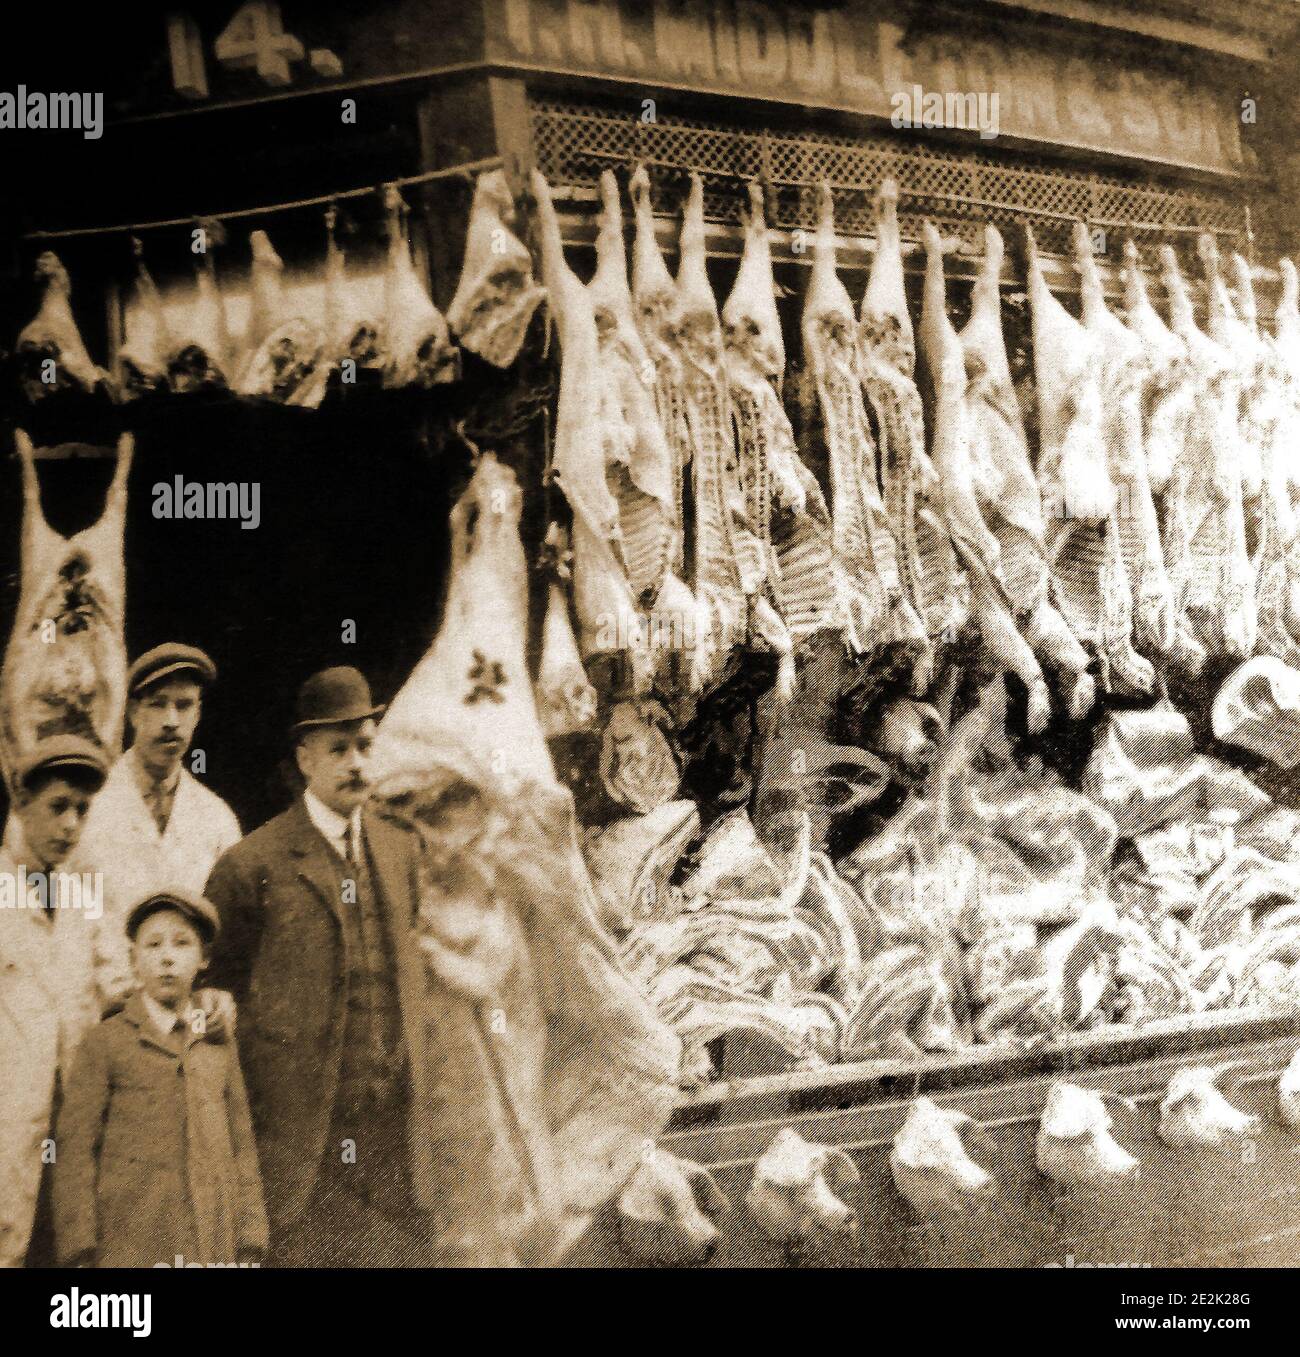 Una prima fotografia di un macellaio tradizionale a Whitby, nel Nord Yorkshire, Inghilterra. Il proprietario del negozio, la sua famiglia e il personale posa alla porta, whils la finestra contiene una massiccia esposizione di carne (compresa una fila di teste di maiale) probabilmente al tempo di Natale. Foto Stock